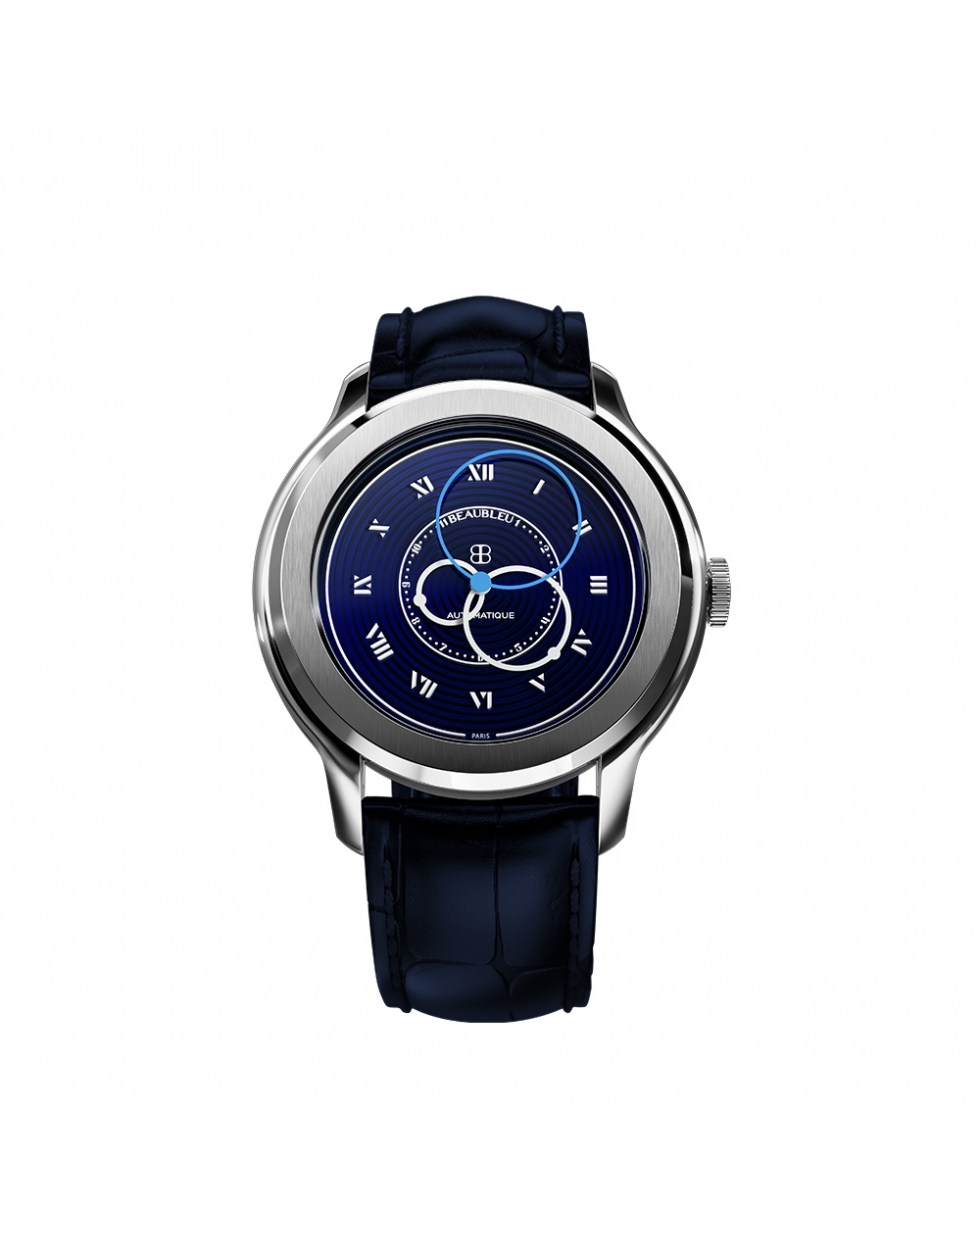 Montre Beaubleu Vitruve Origine Bleu automatique cadran bleu bracelet en cuir noir ou acier inoxydable 39 mm